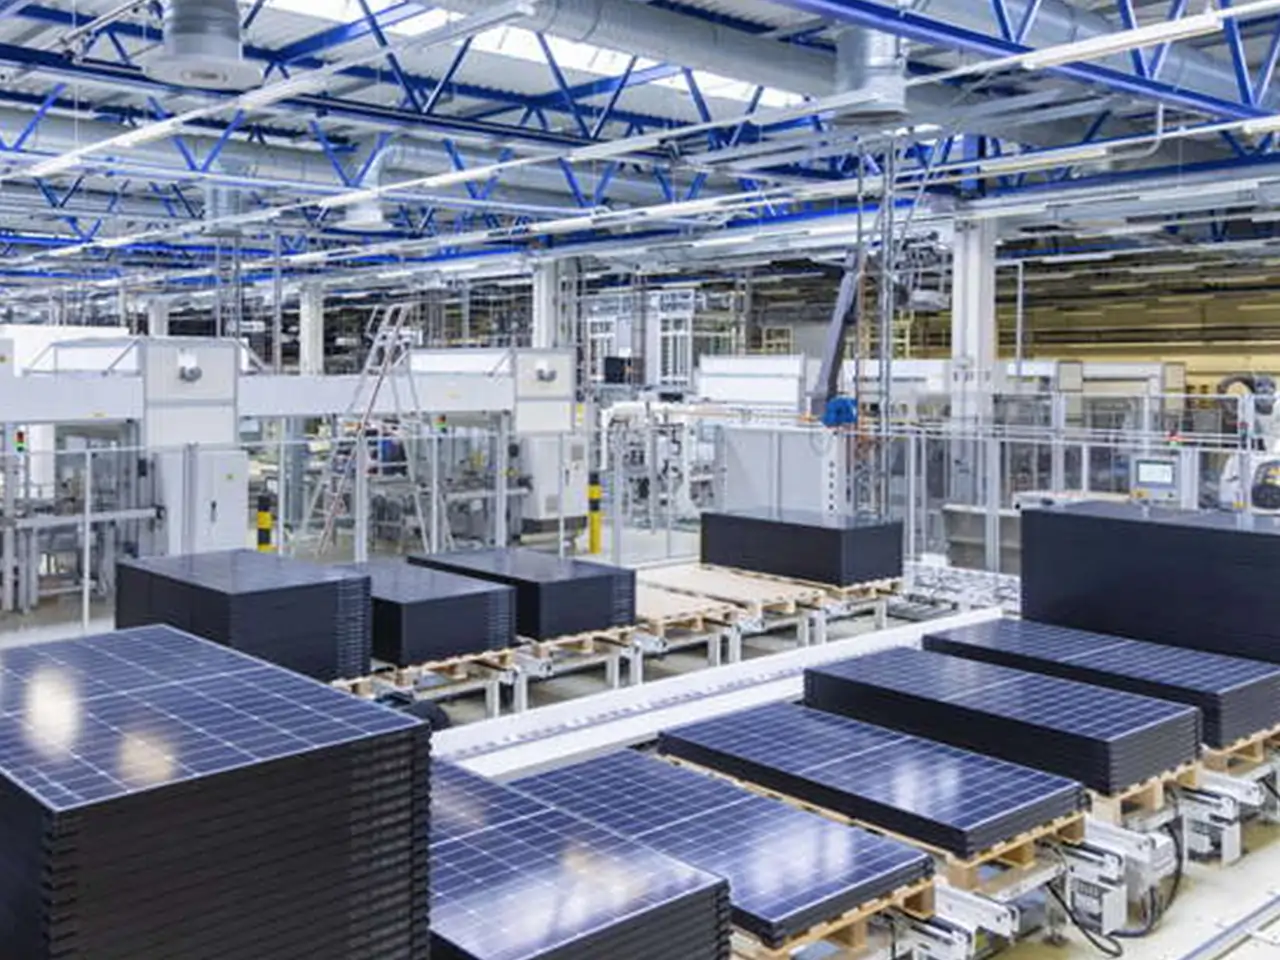 Wir sind Fachpartner des Solarmodulherstellers Meyer Burger: Höchste Qualität und Effizienz produziert in Deutschland